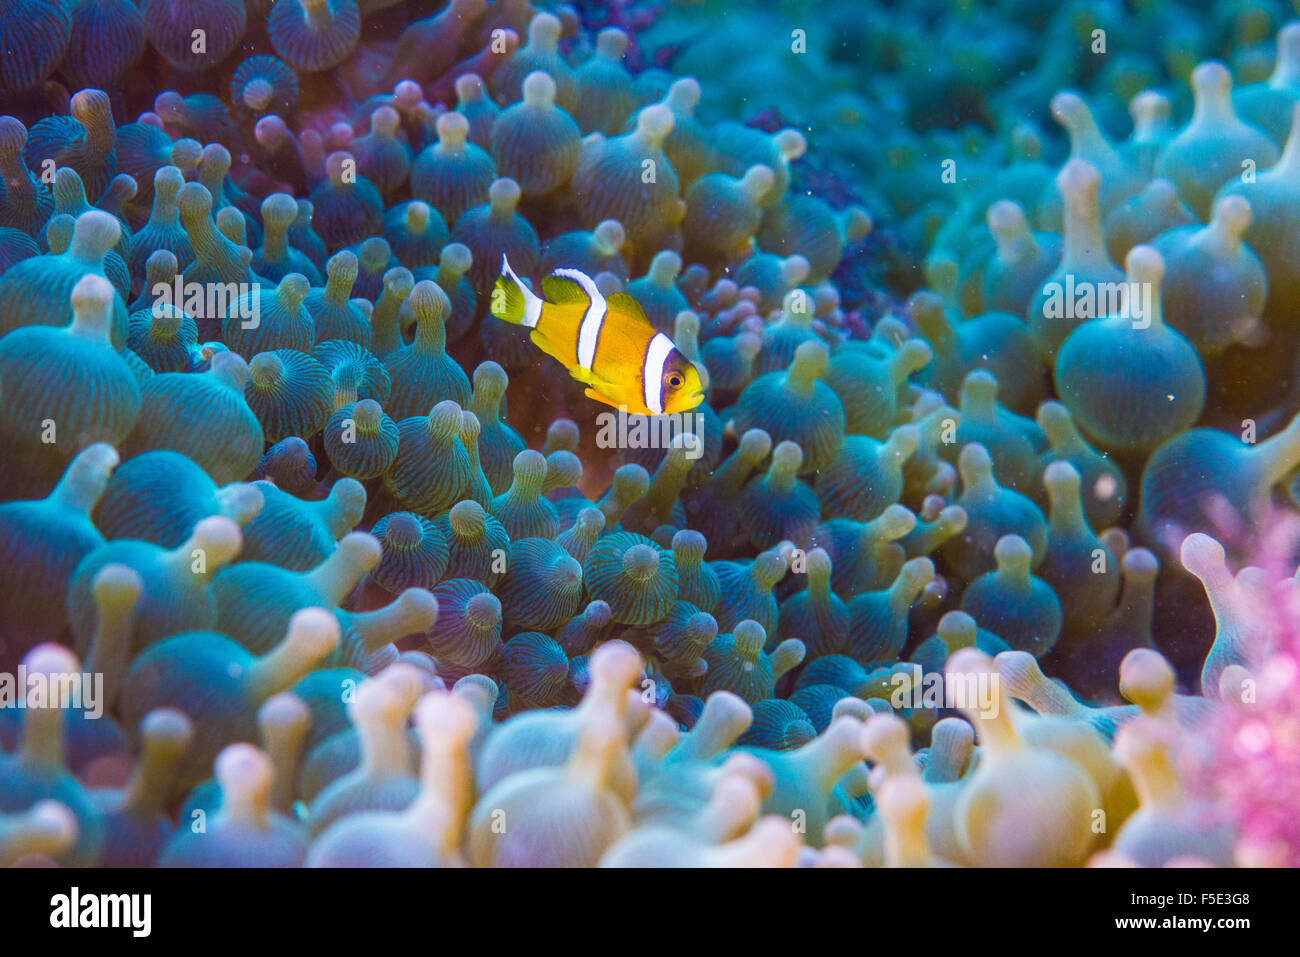 Kinder Anemone Anemonenfisch, 1cm lang, seinem großen Seeanemone Haus herumschwimmen. Kajika Owase Mie Japan Stockfoto